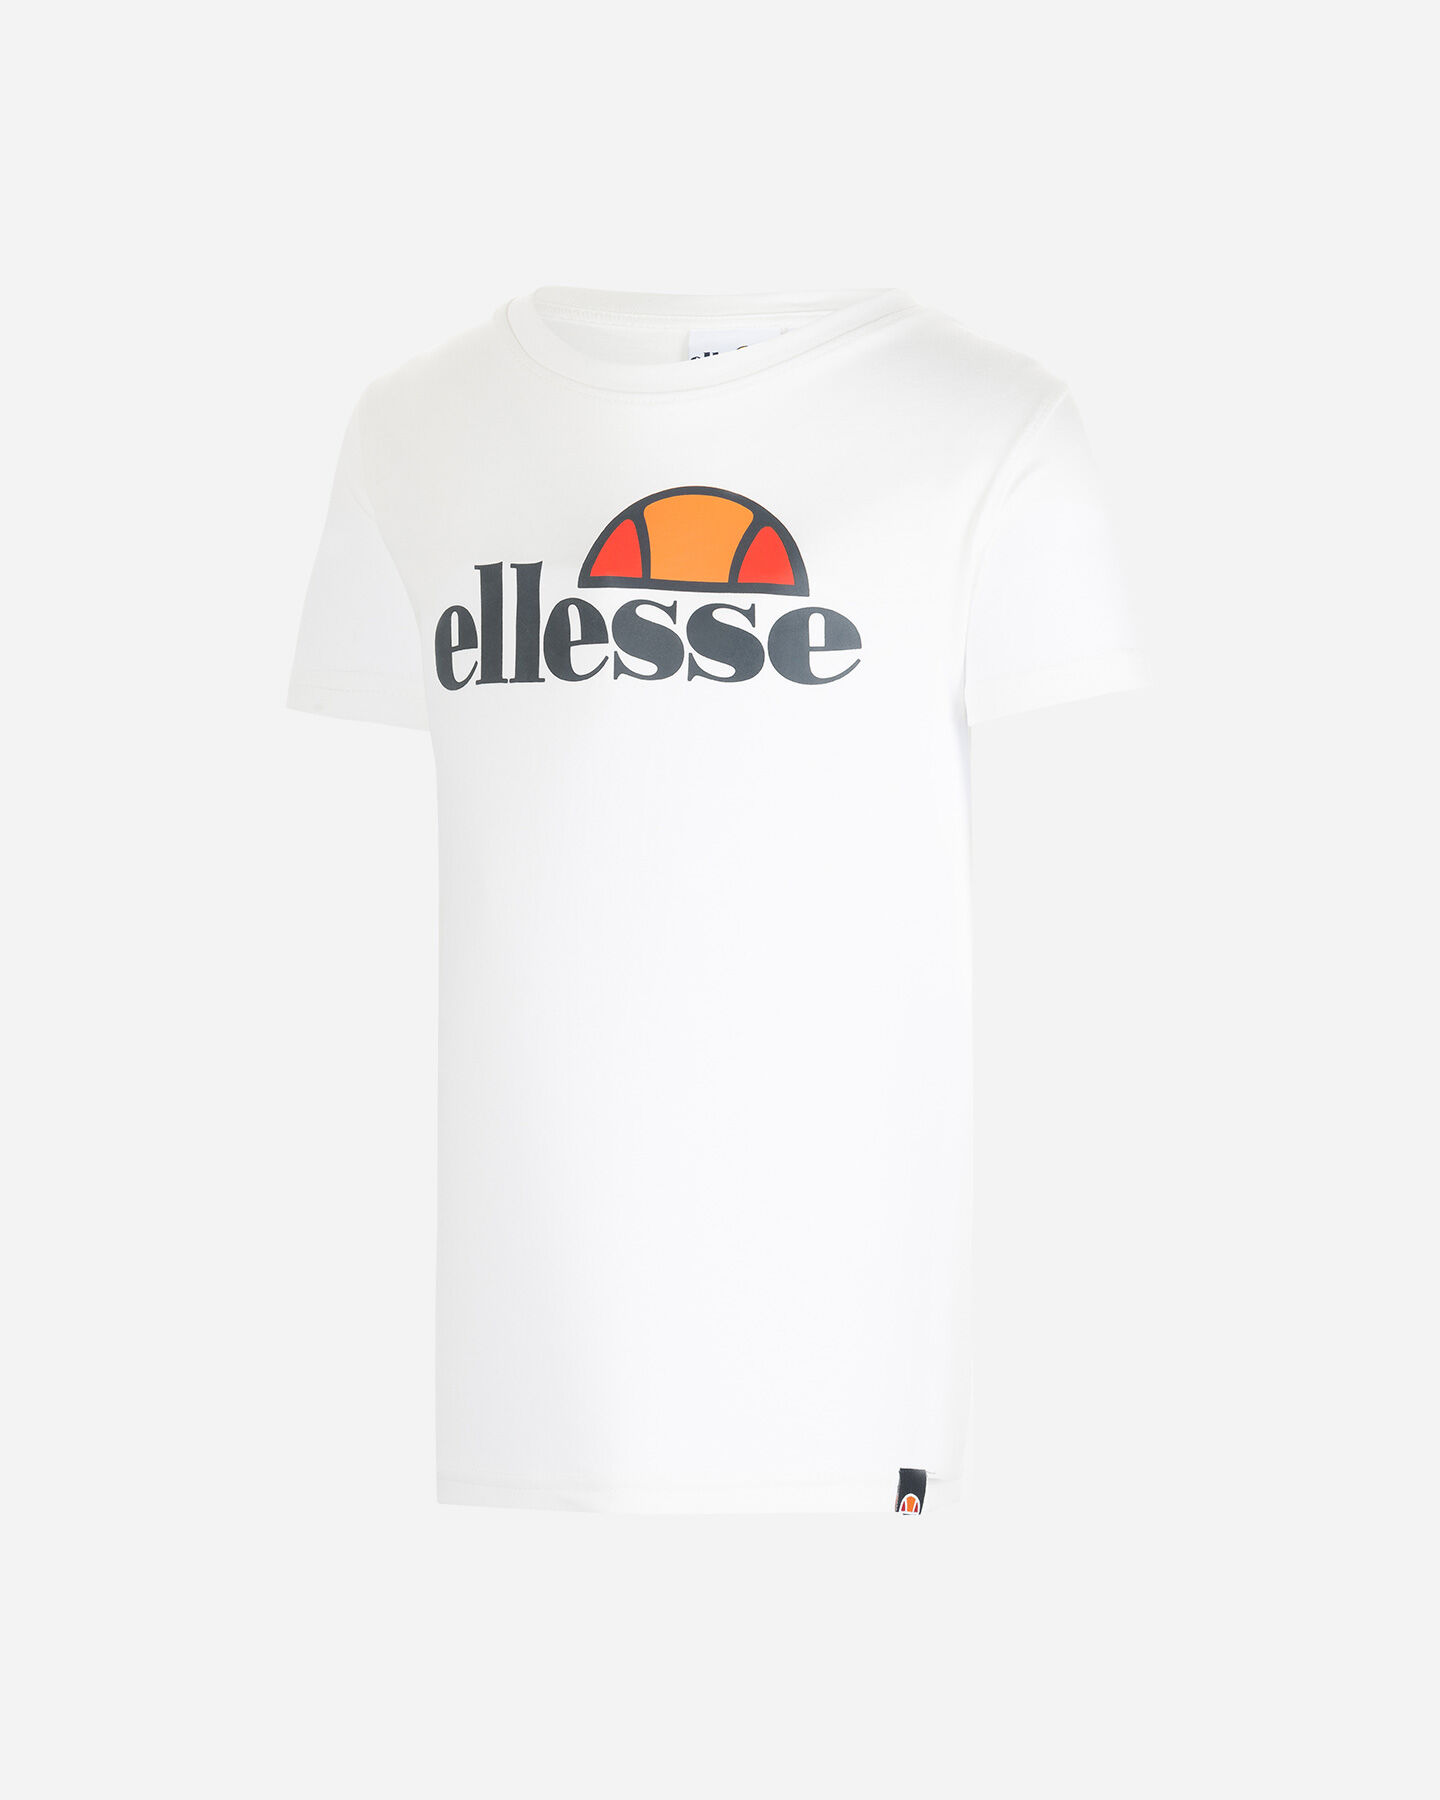  T-Shirt ELLESSE MC SPECTRA JR S4080391|001|4A scatto 0